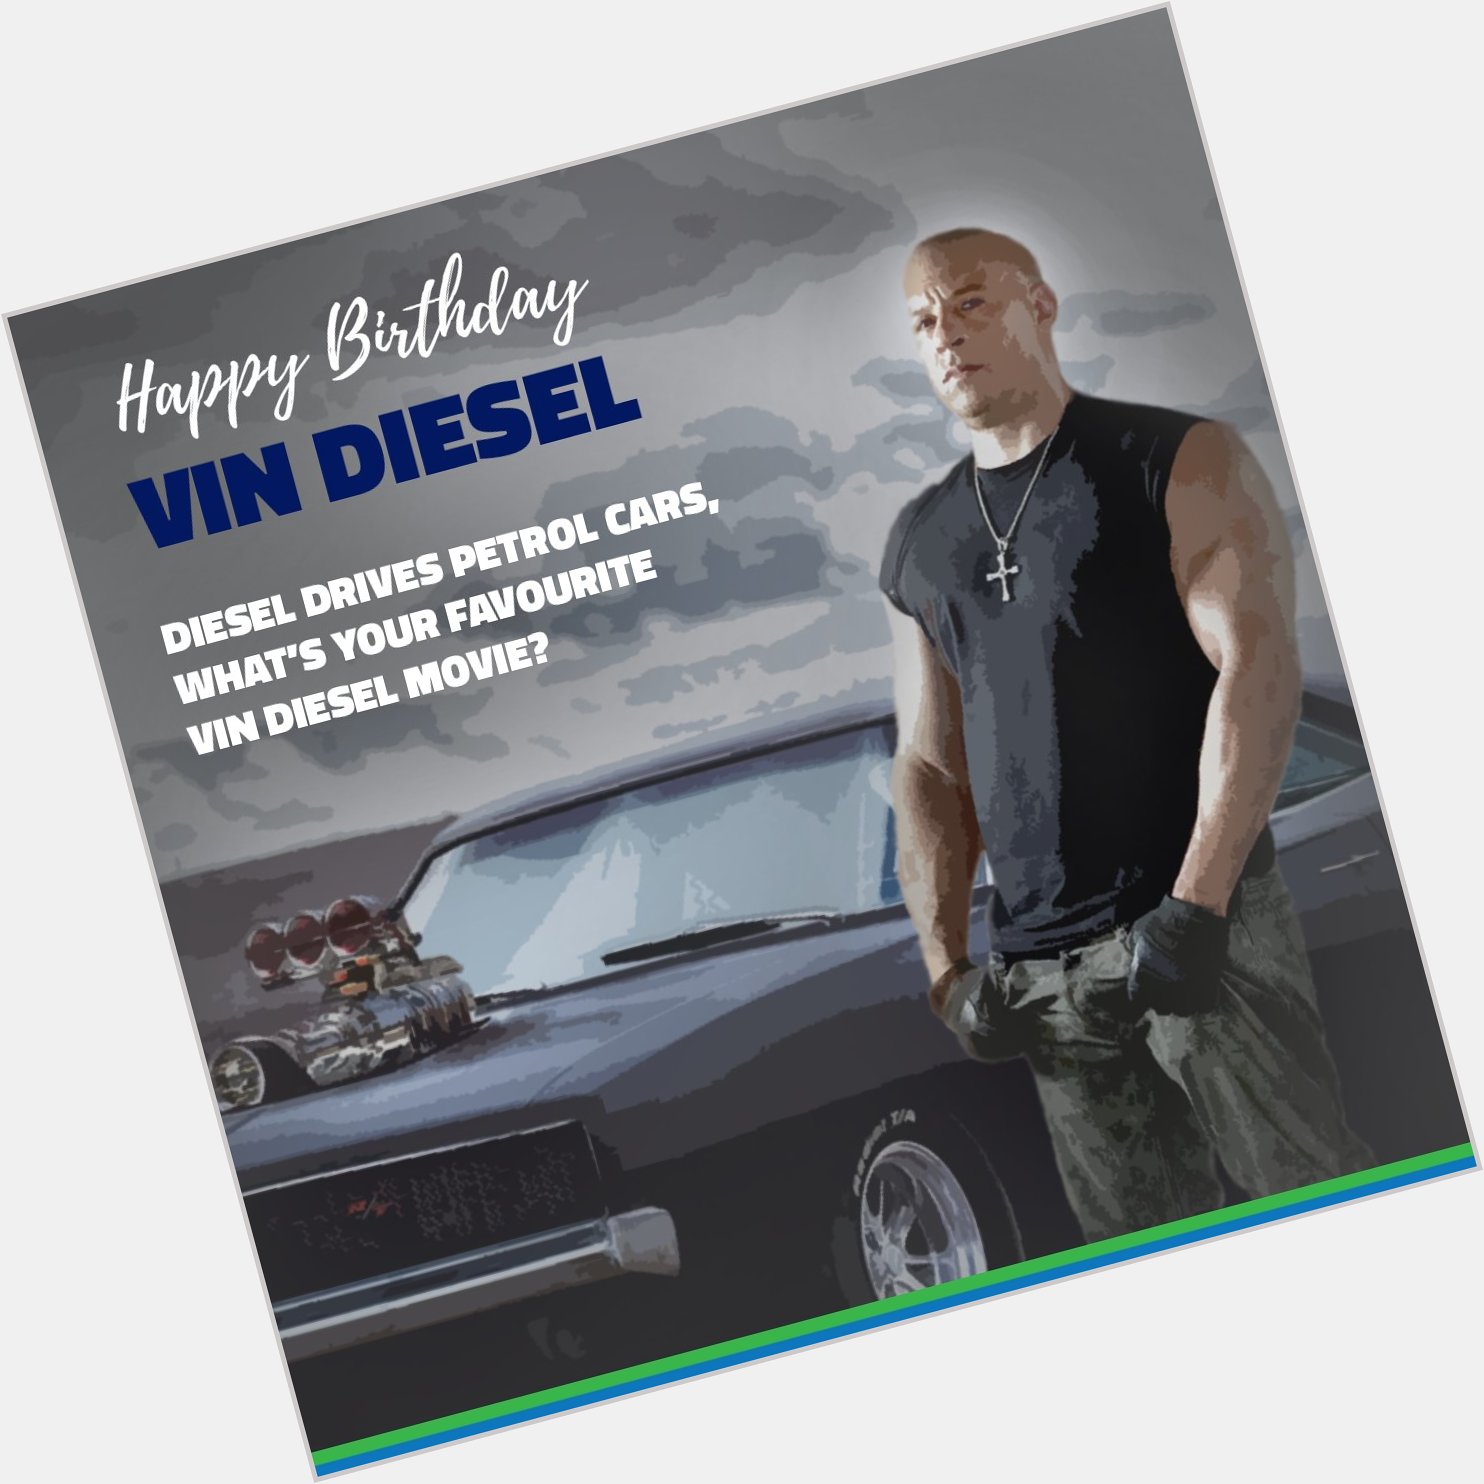 Happy Birthday Vin Diesel.   